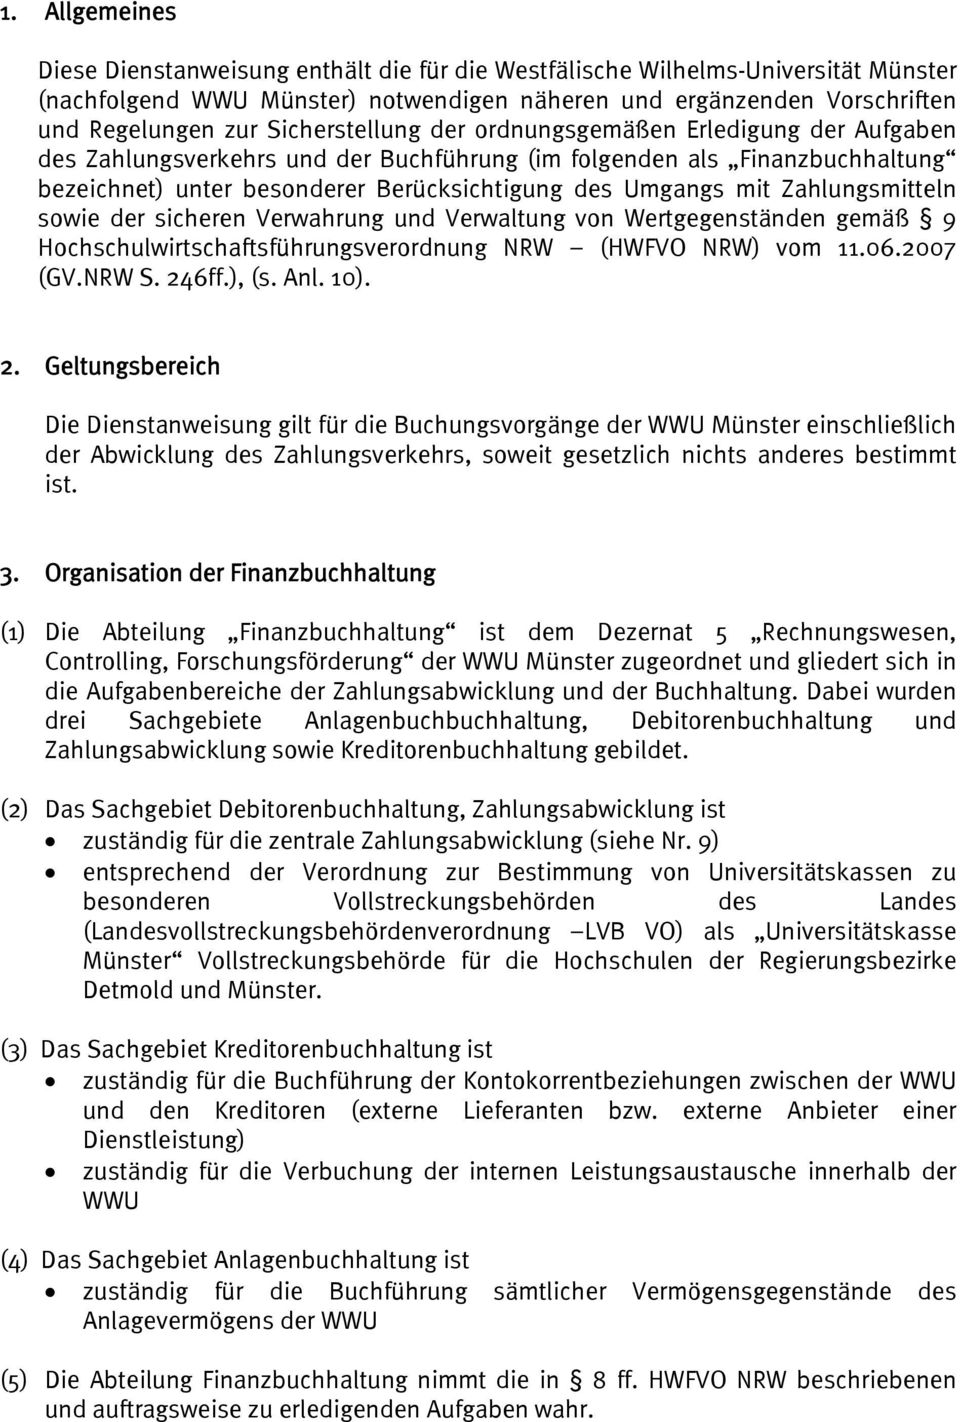 Zahlungsmitteln sowie der sicheren Verwahrung und Verwaltung von Wertgegenständen gemäß 9 Hochschulwirtschaftsführungsverordnung NRW (HWFVO NRW) vom 11.06.2007 (GV.NRW S. 24